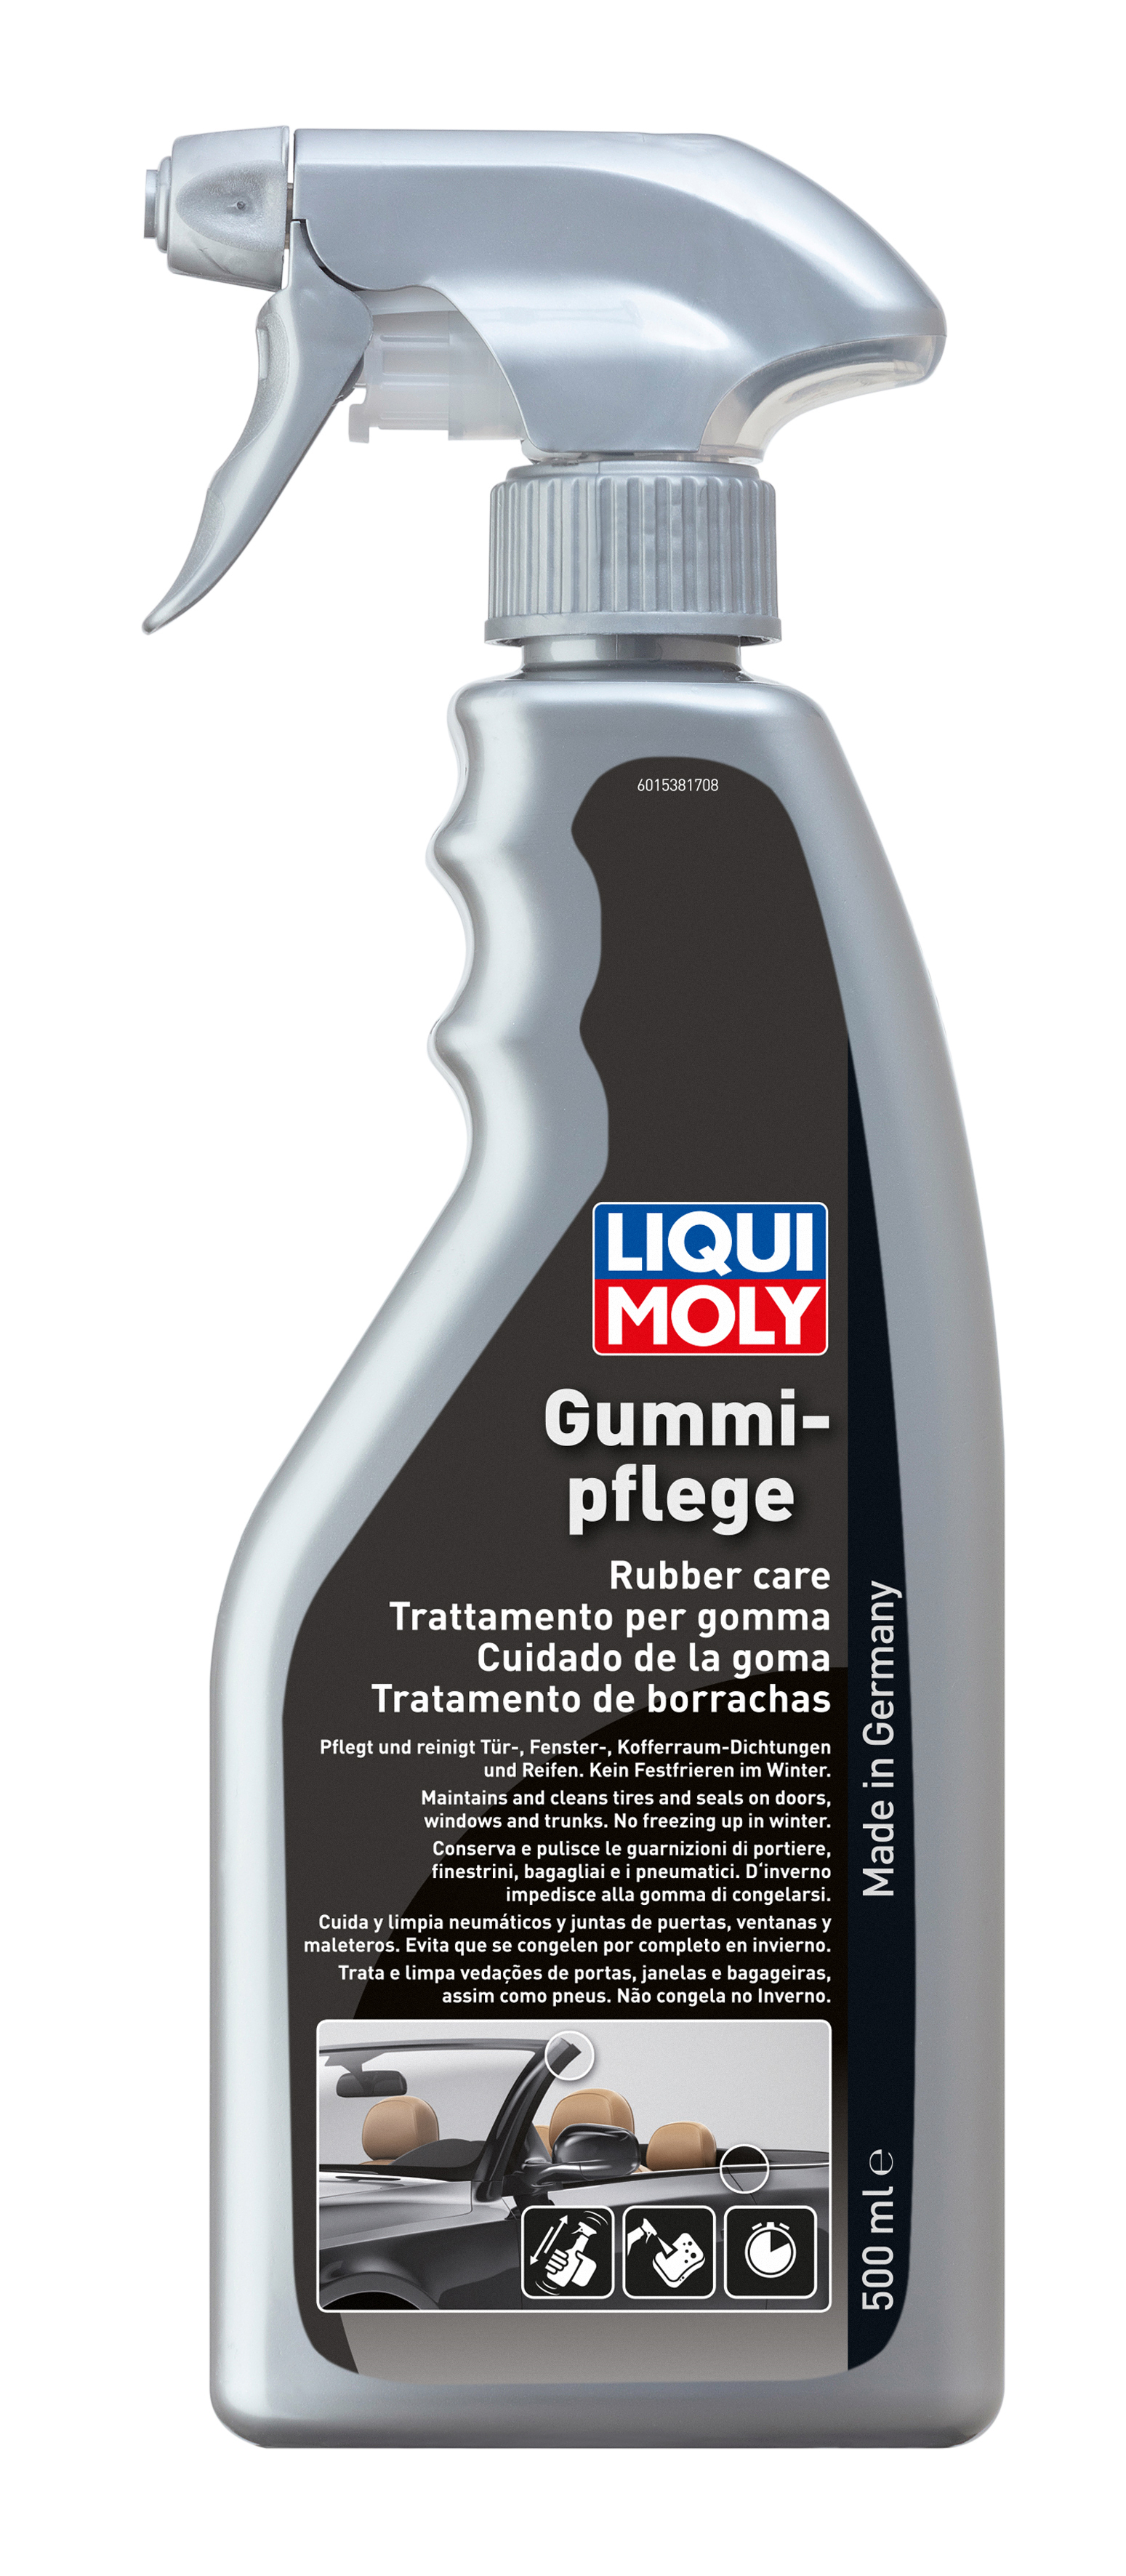 Средство для ухода за резиной Liqui Moly Gummi-pflege с триггером